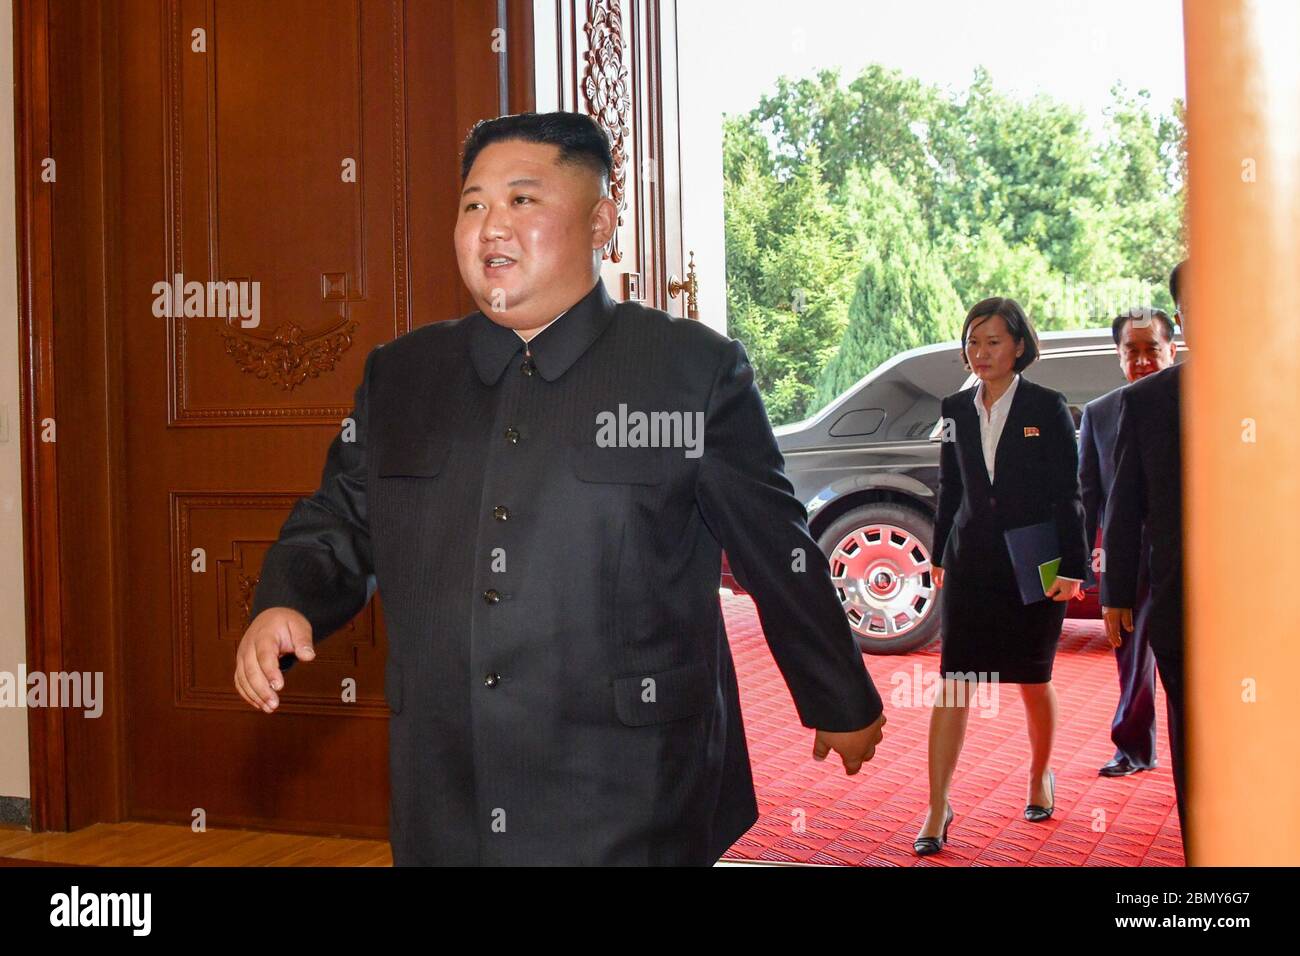 Le secrétaire Pompeo et le président Kim assistent à un déjeuner de travail à Pyongyang le président Kim Jong un de la République populaire démocratique de Corée arrive pour un déjeuner de travail avec le secrétaire d'État Michael R. Pompeo à Pyongyang, République populaire démocratique de Corée, le 7 octobre 2018. Banque D'Images